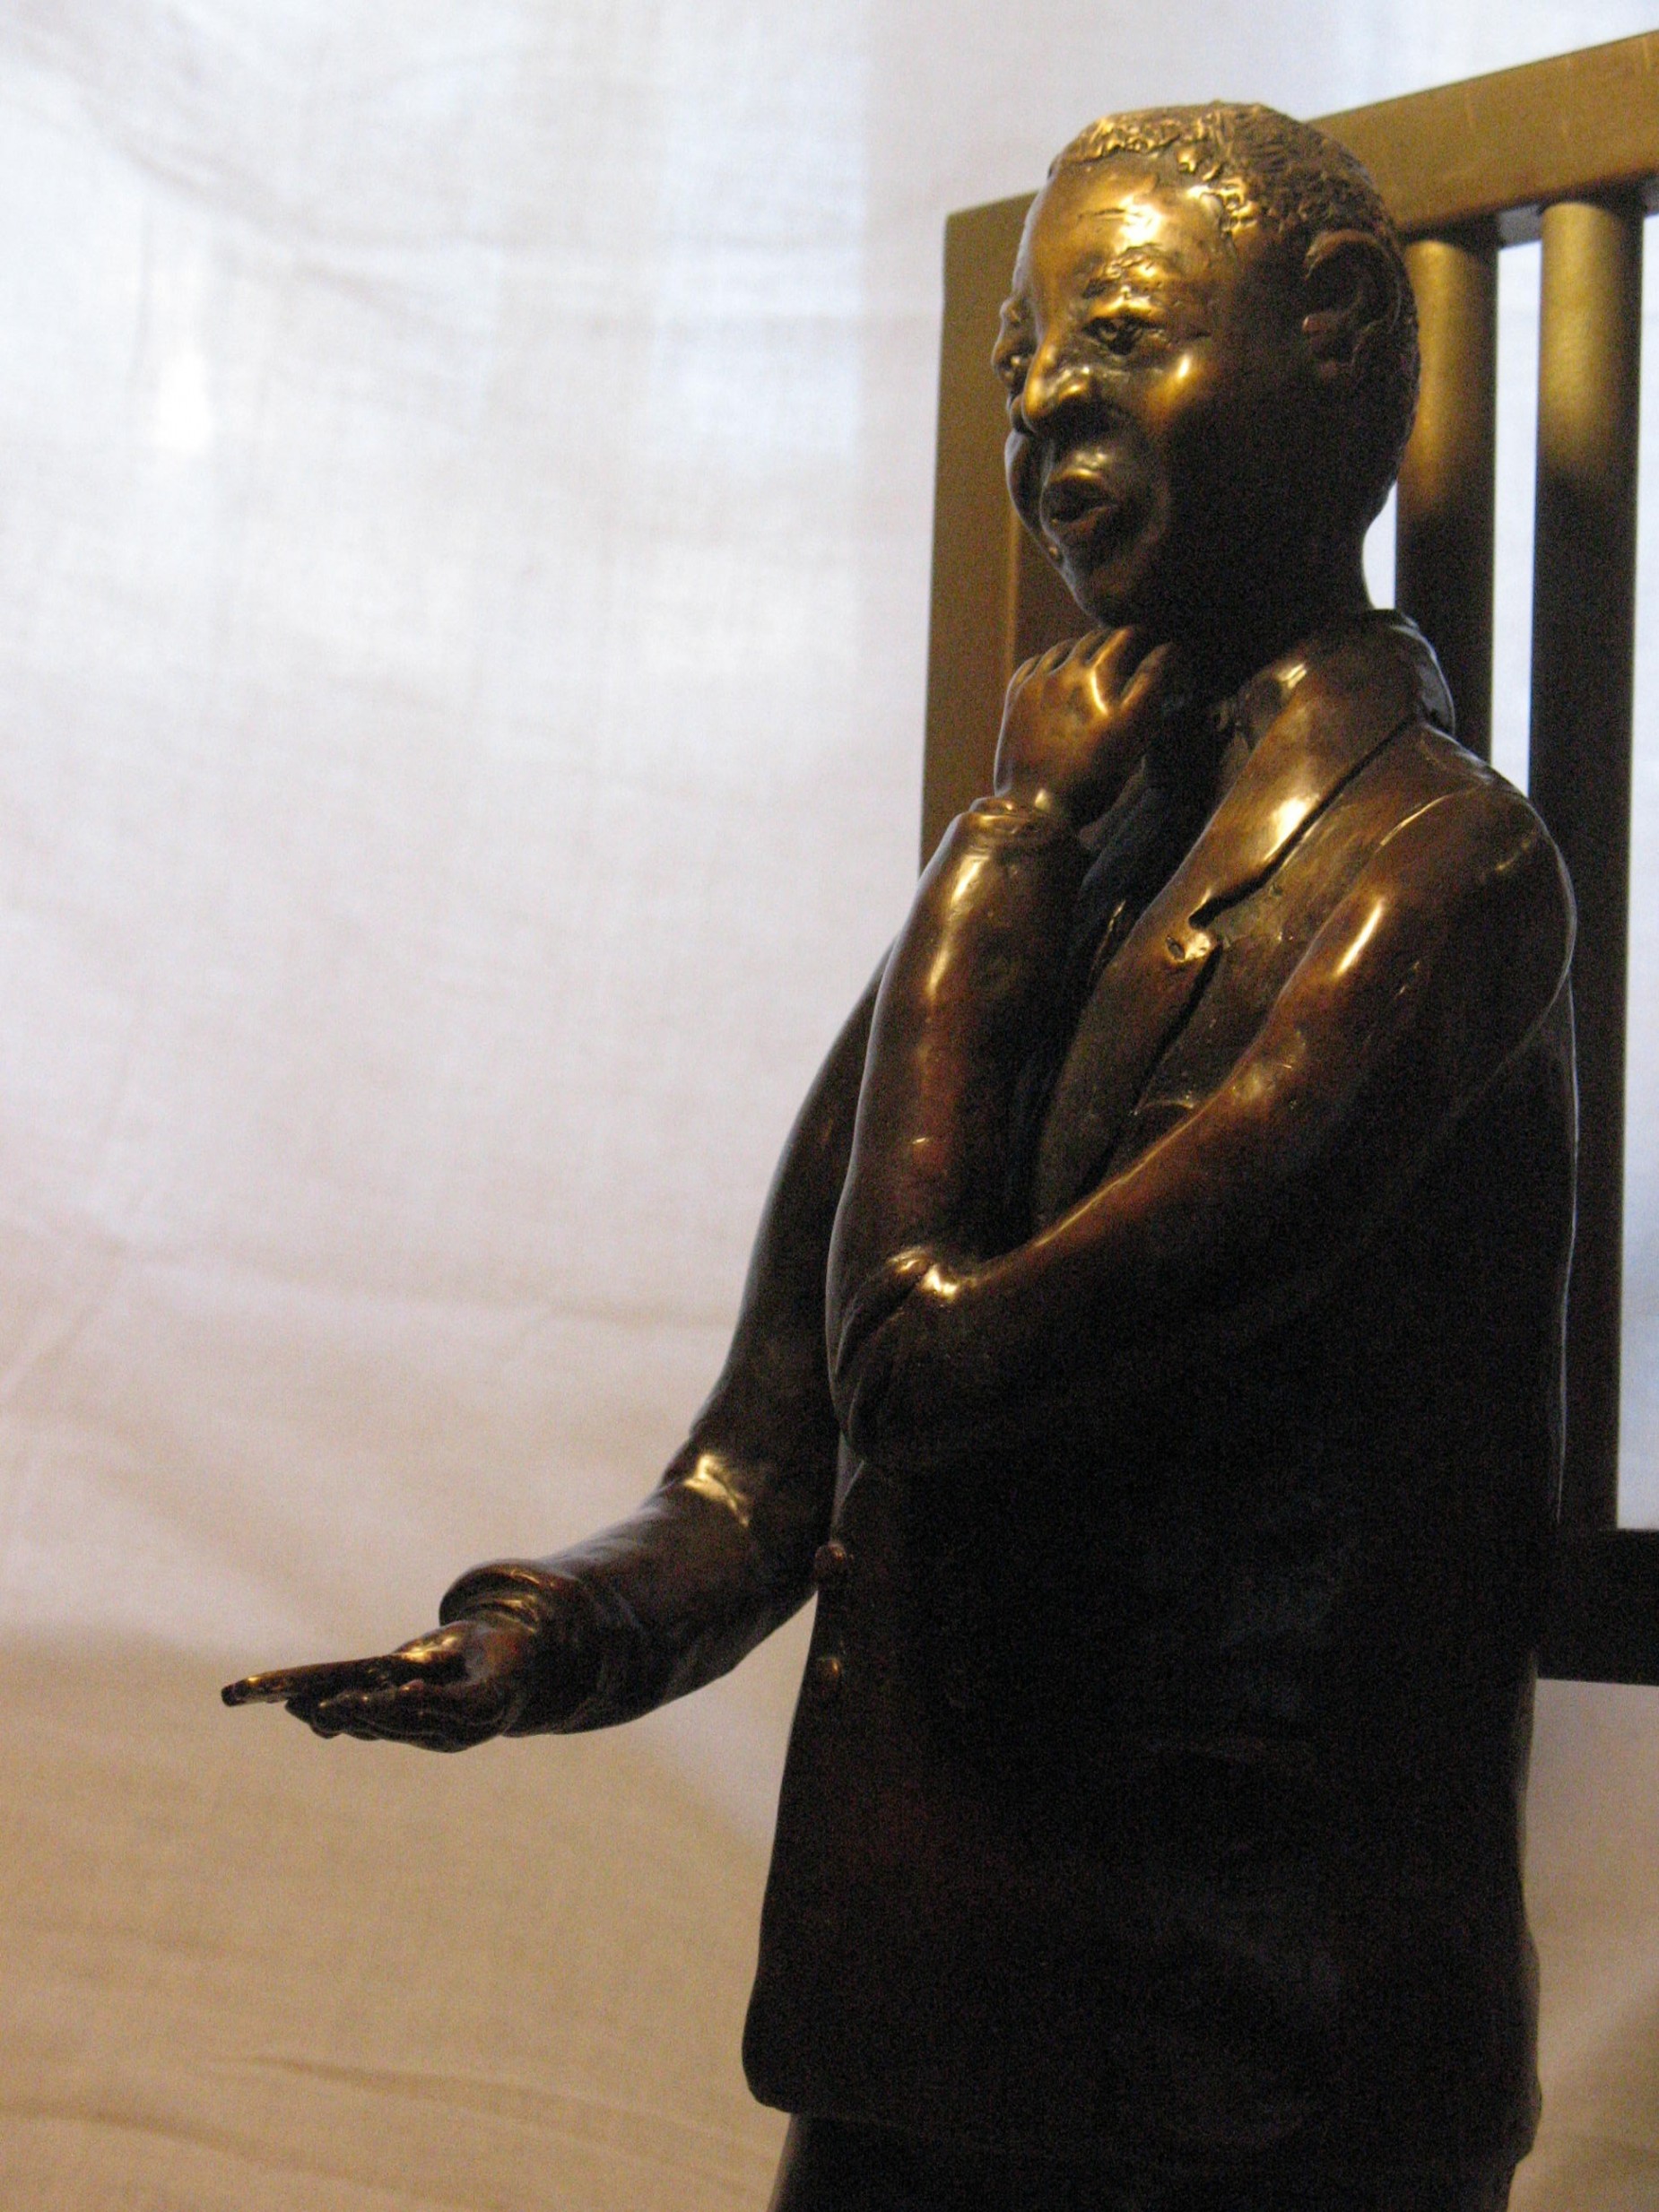 Reflections on Mandela